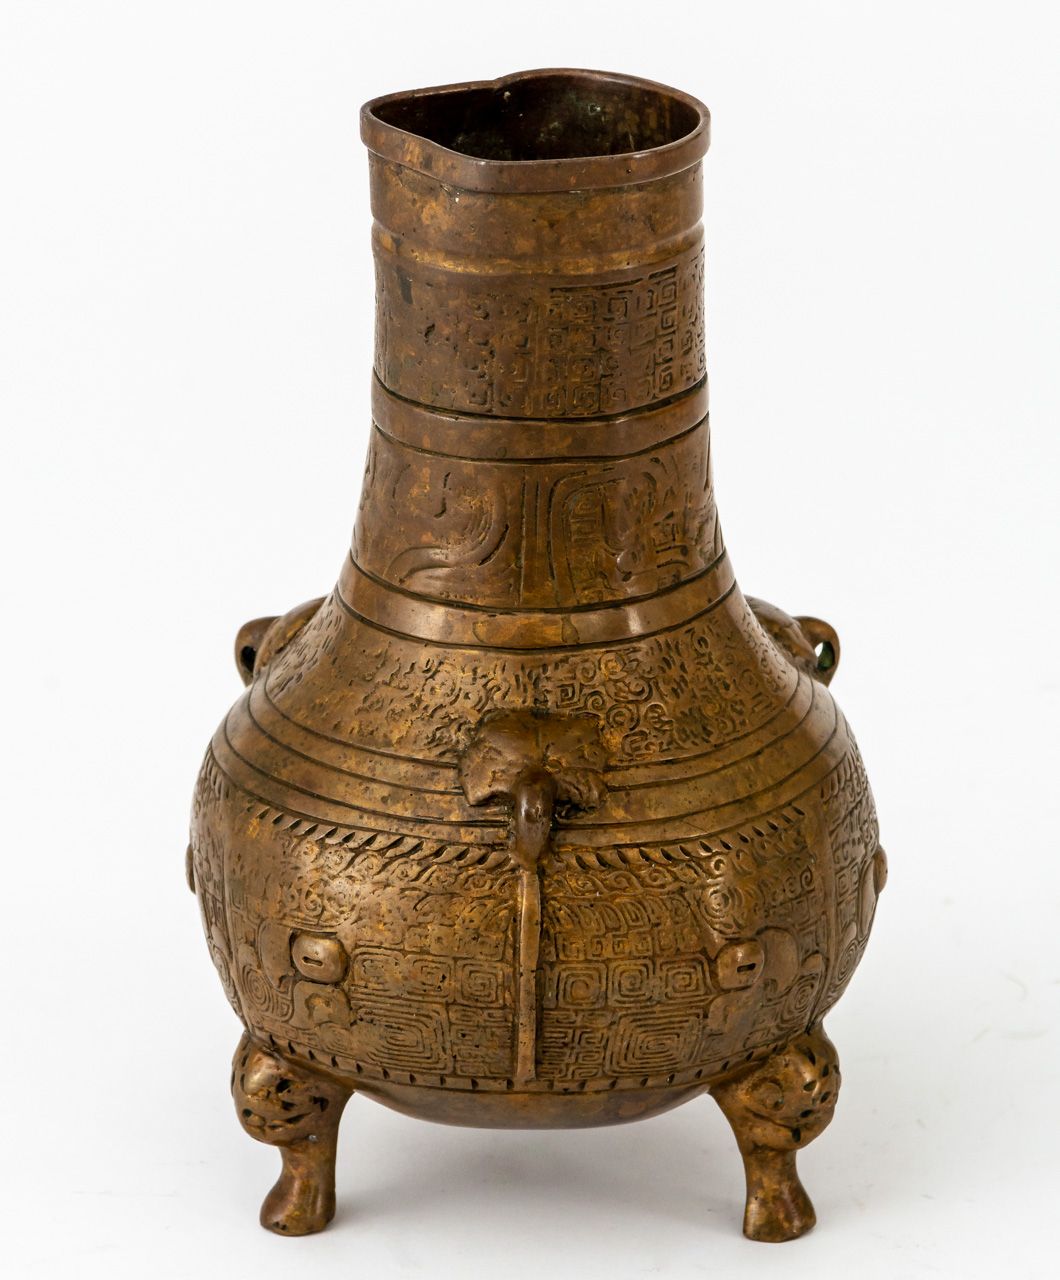 DREI-FUSS-VASE Chine, bronze, 19e s. Ou plus ancien

16,5 cm de haut